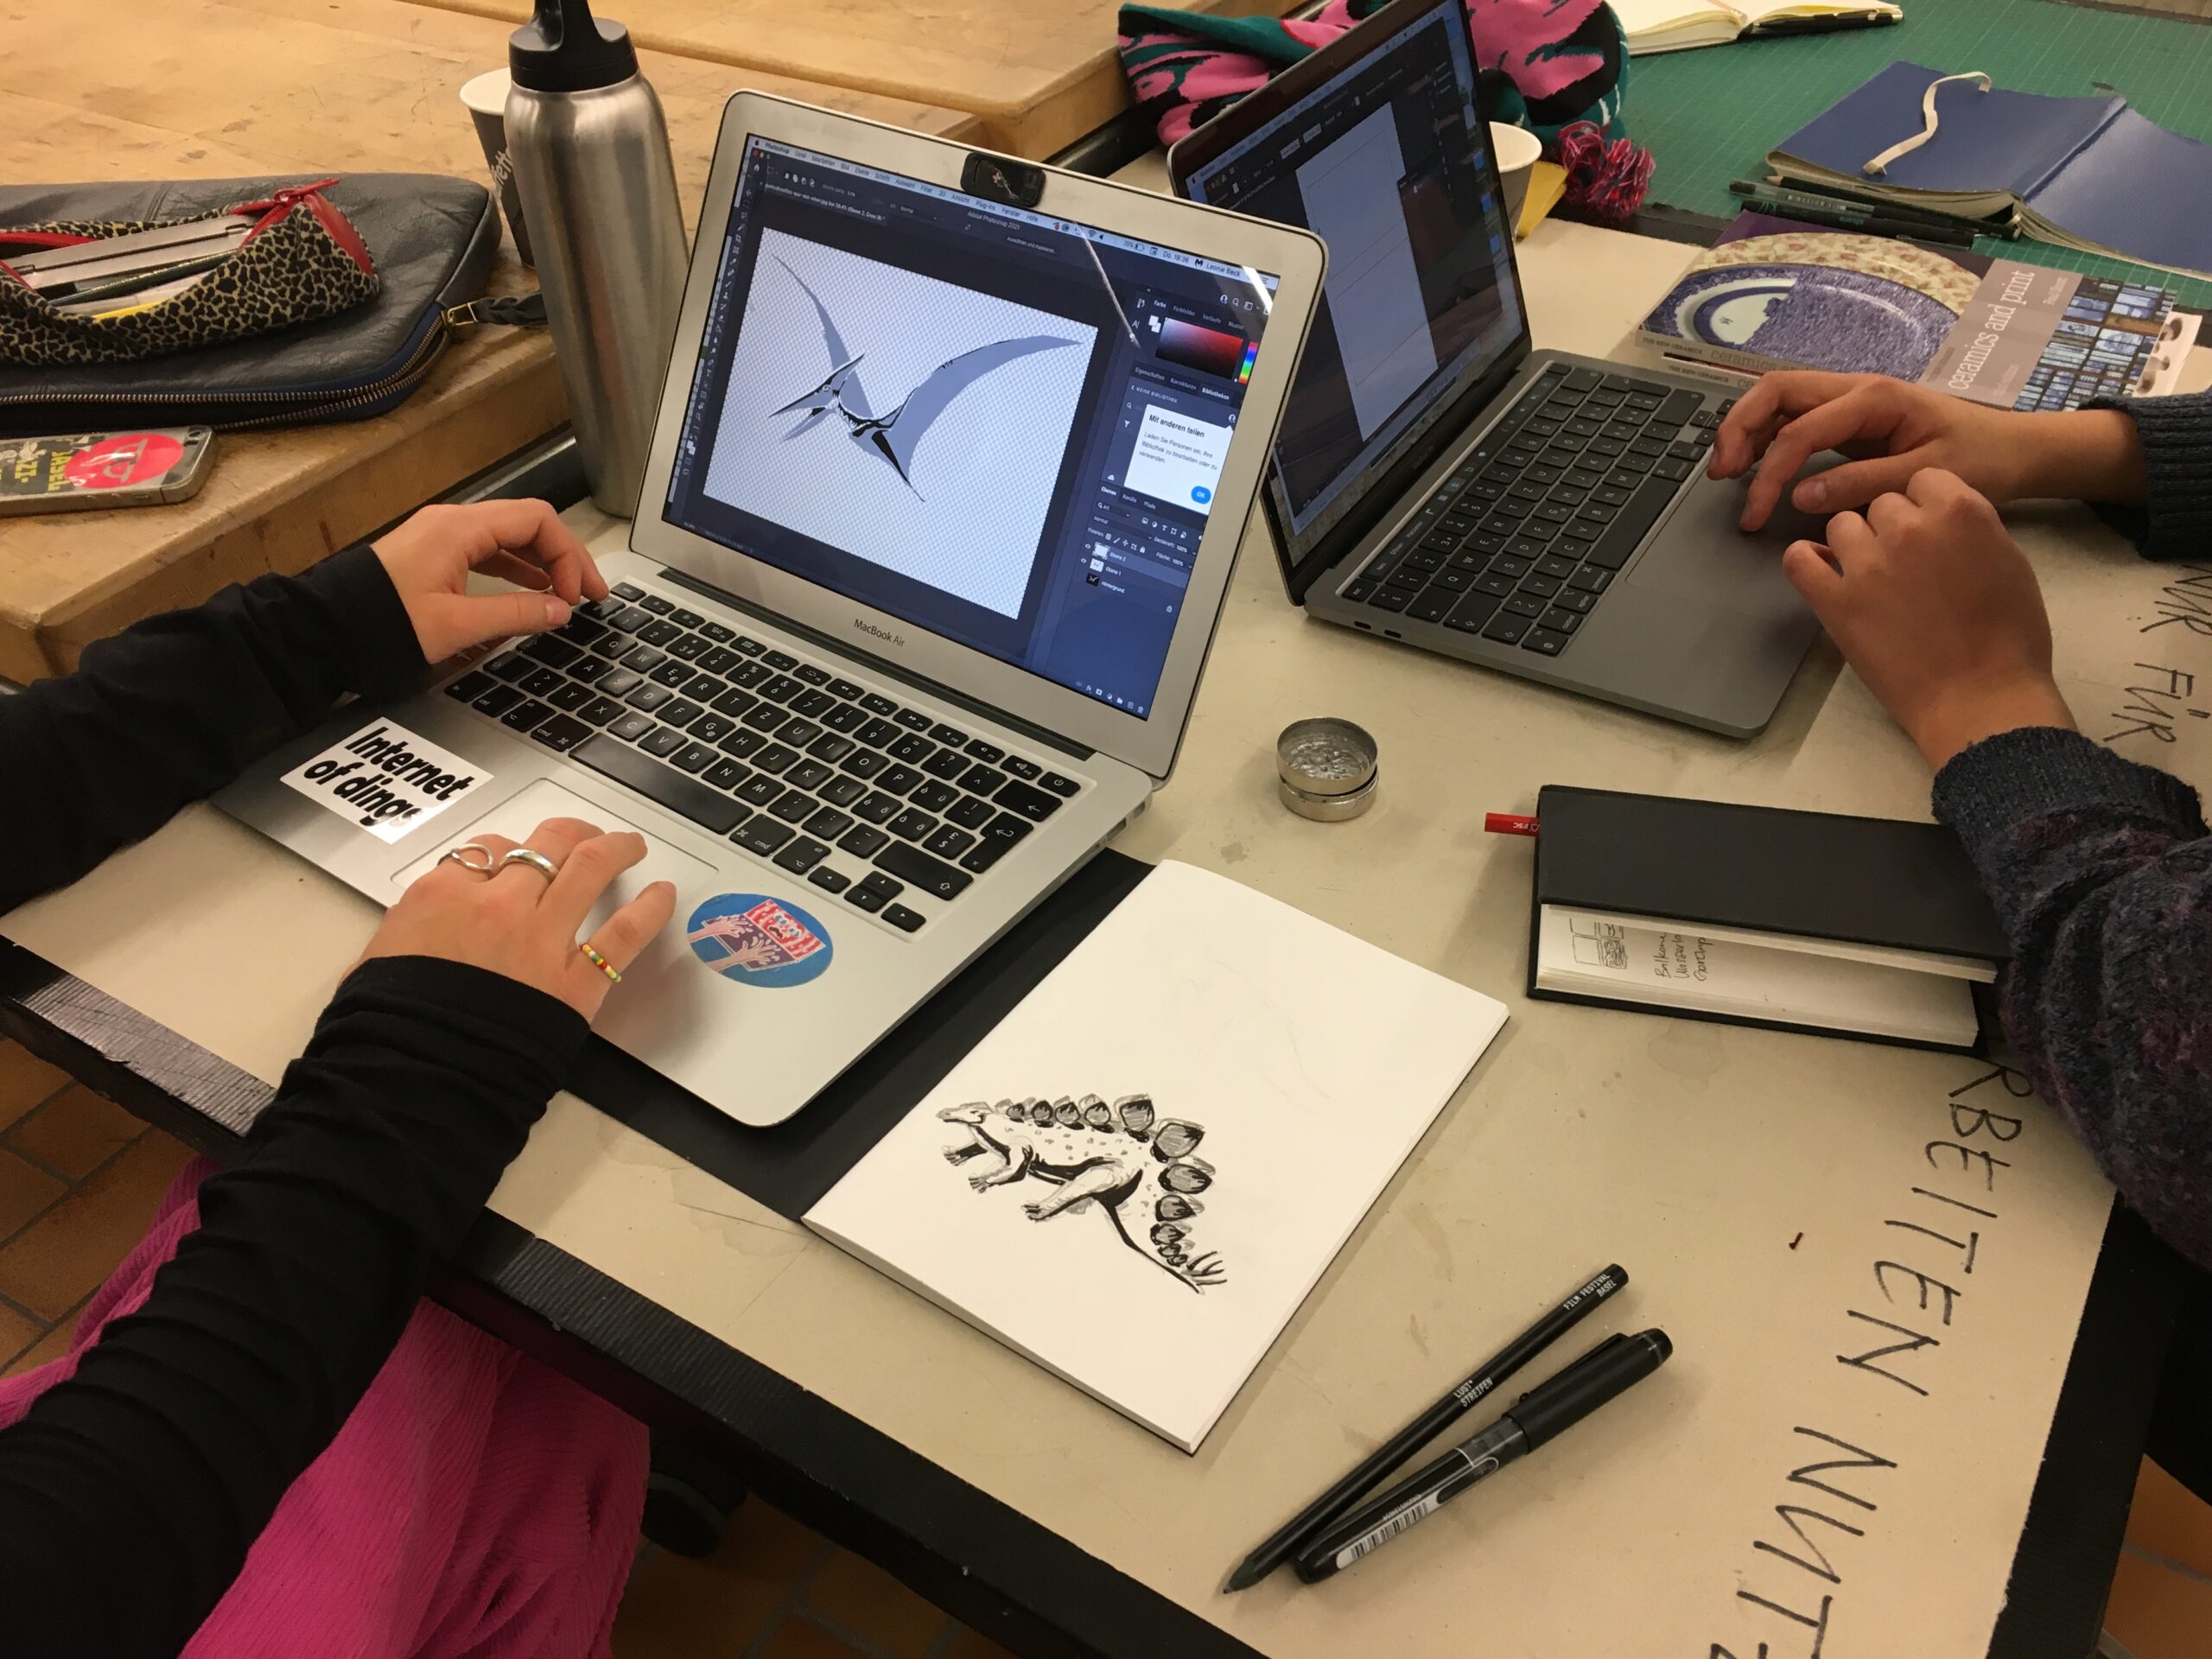 Twee open laptops staan op een tafel; aan elke laptop werkt één persoon. Hun handen rusten op de toetsenborden. Op het scherm staat een afbeelding van een pterosauriër. Rechts van het scherm ligt een schetsboek met een inkttekening van een dinosaurus.